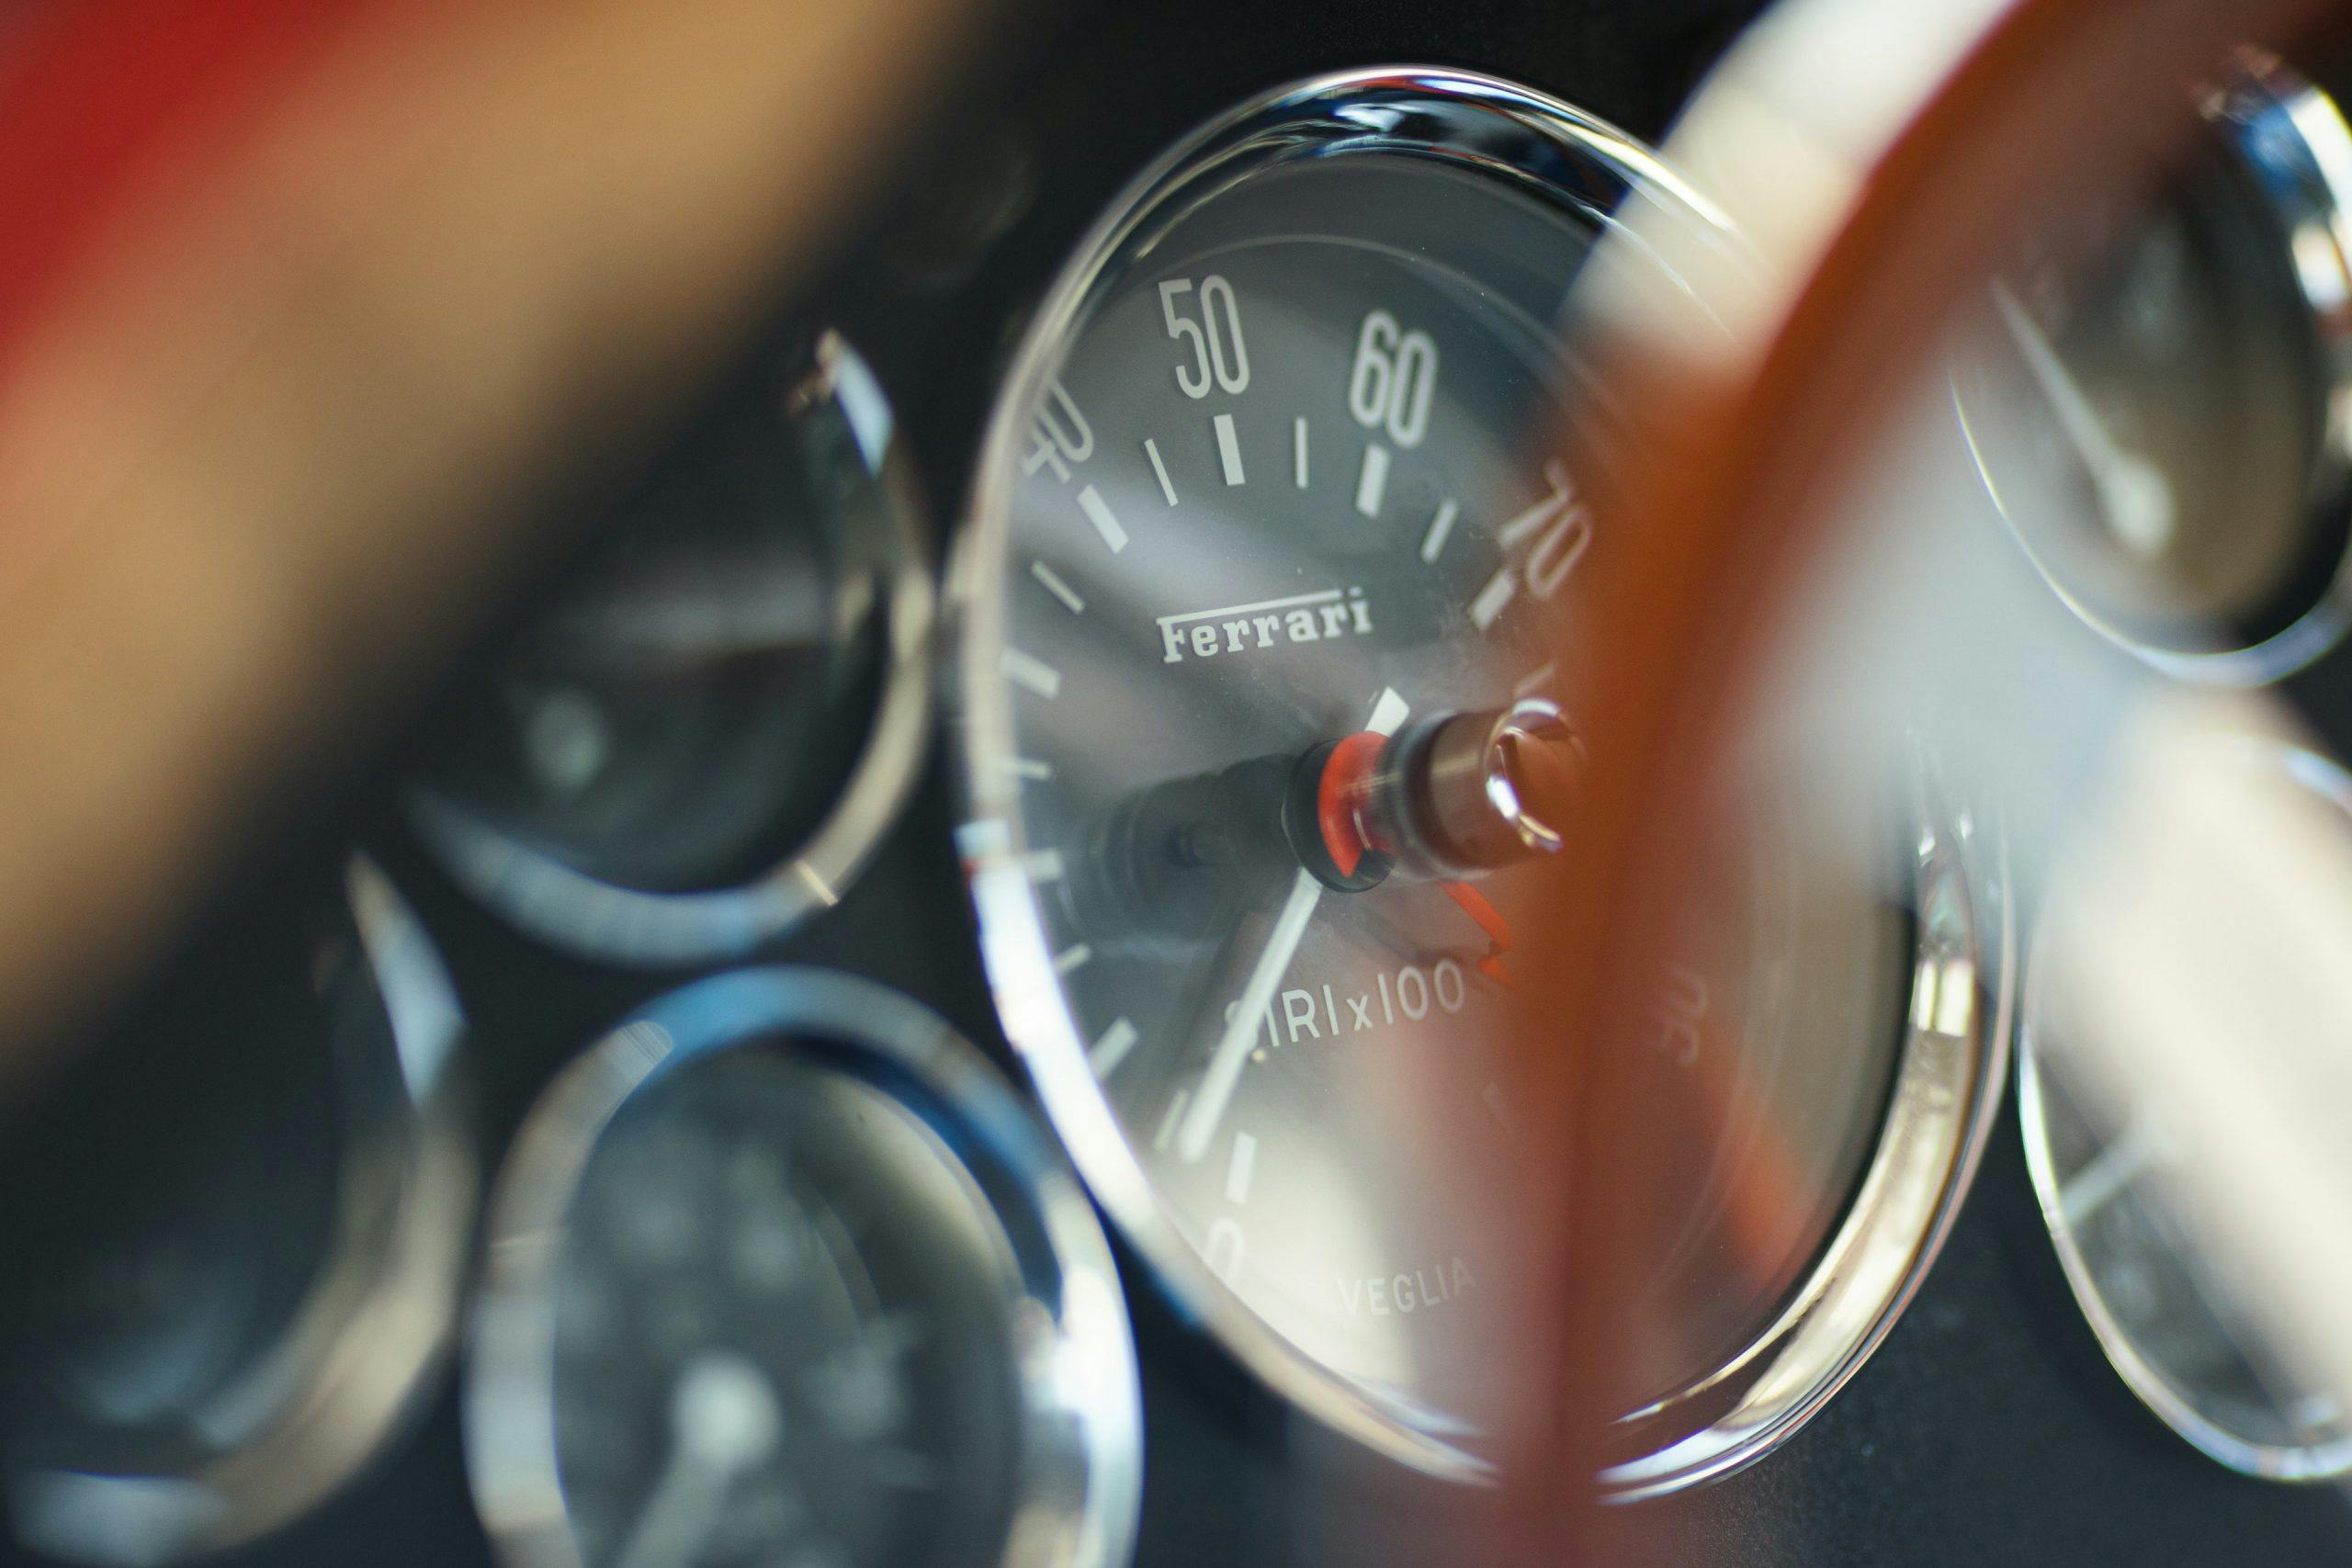 Thunderhill Ferrari gauge detail